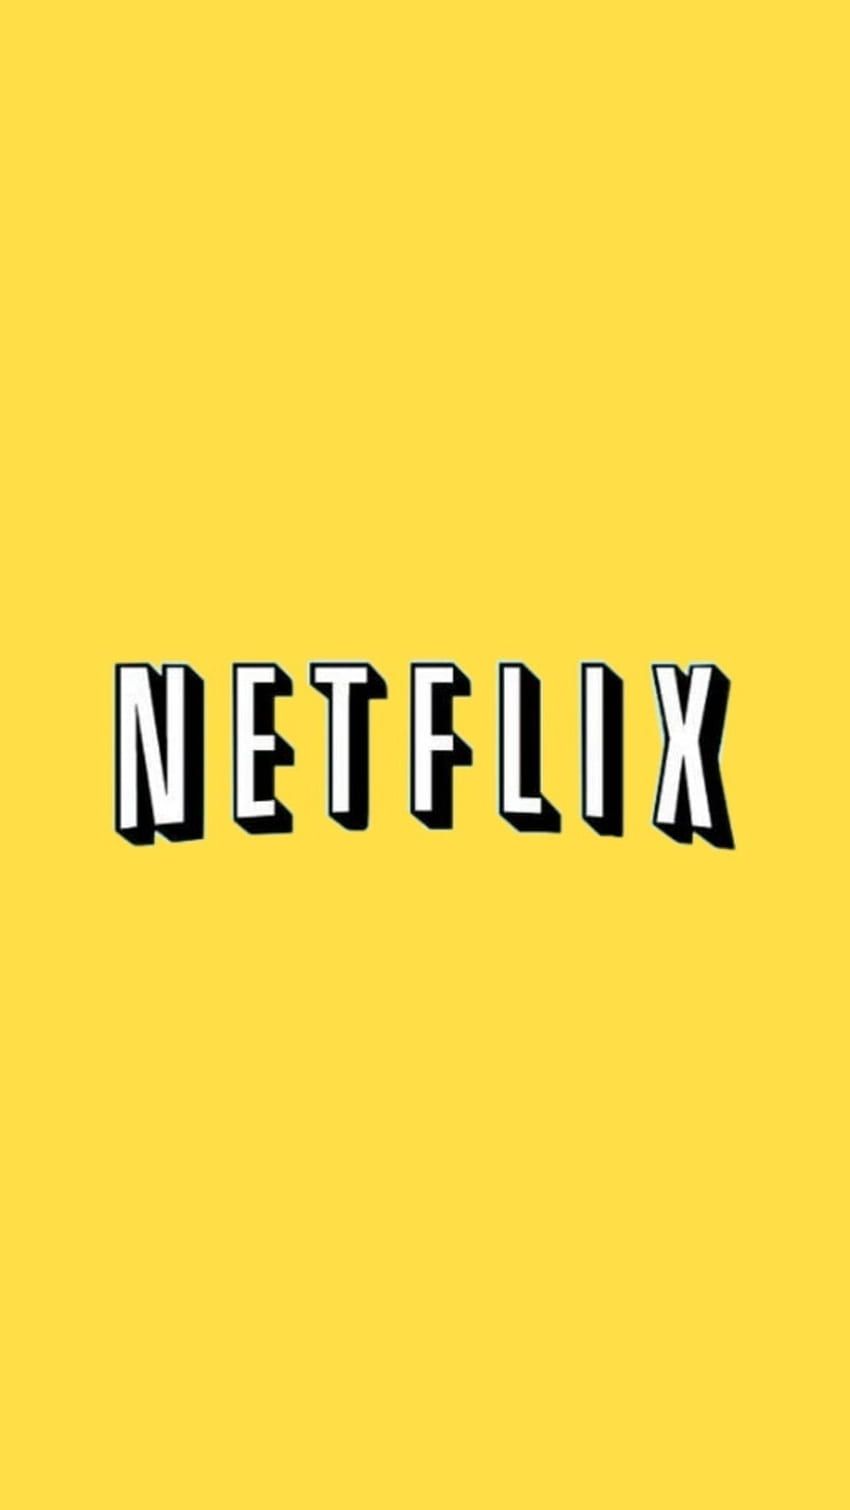 Netflix logo on a yellow background - Yellow, Netflix